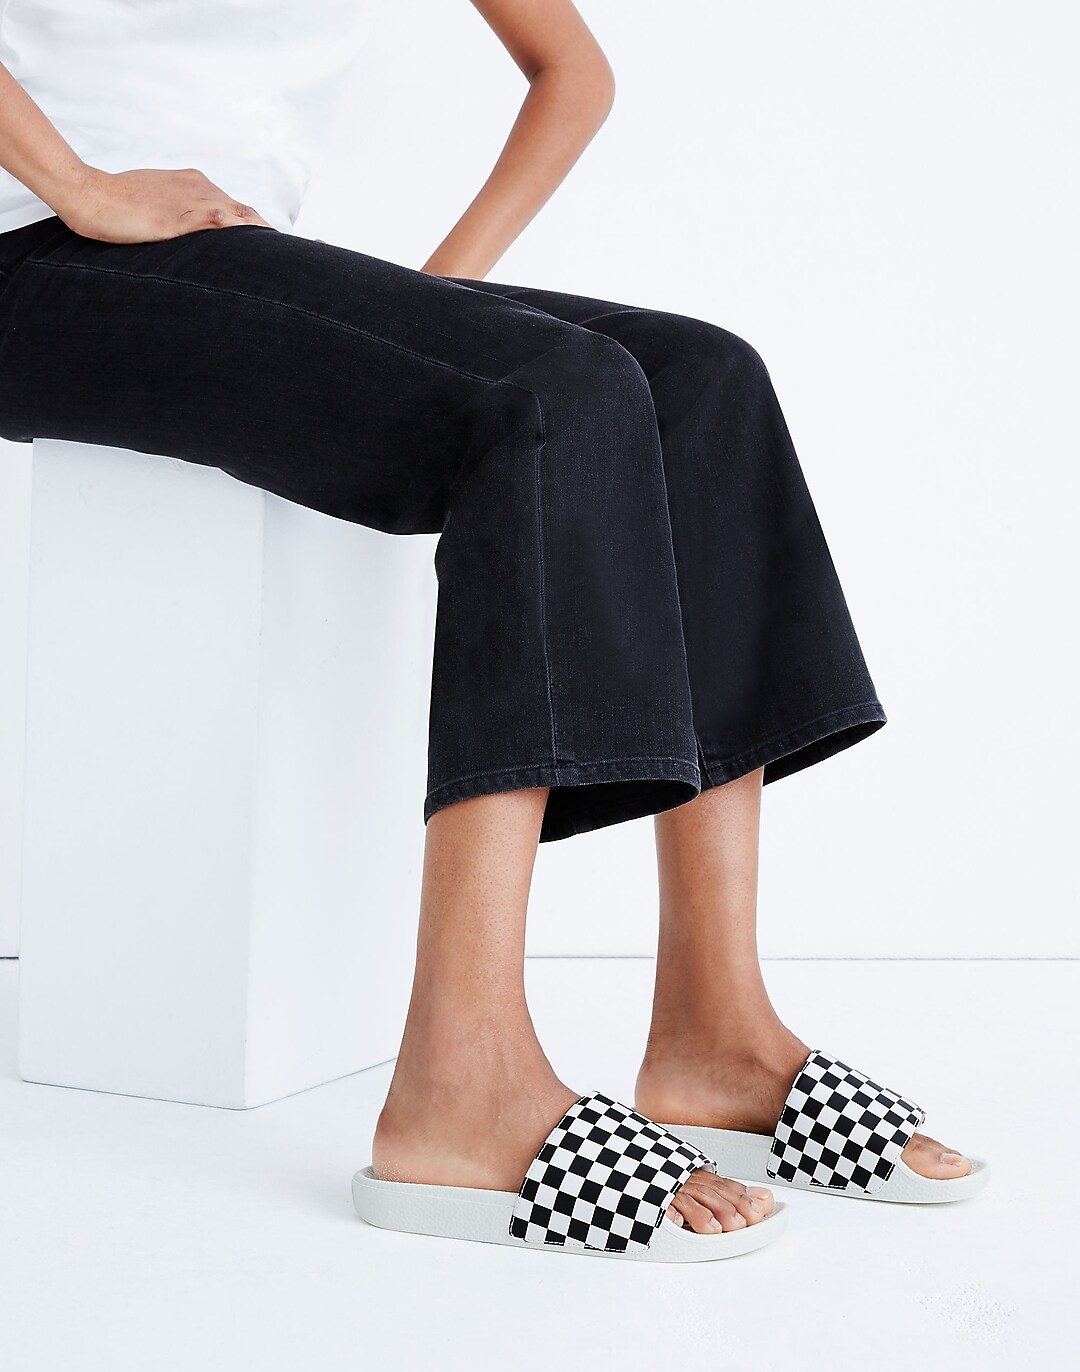 bestuurder arm Jane Austen Vans® Slide-On Sandals in Checkerboard